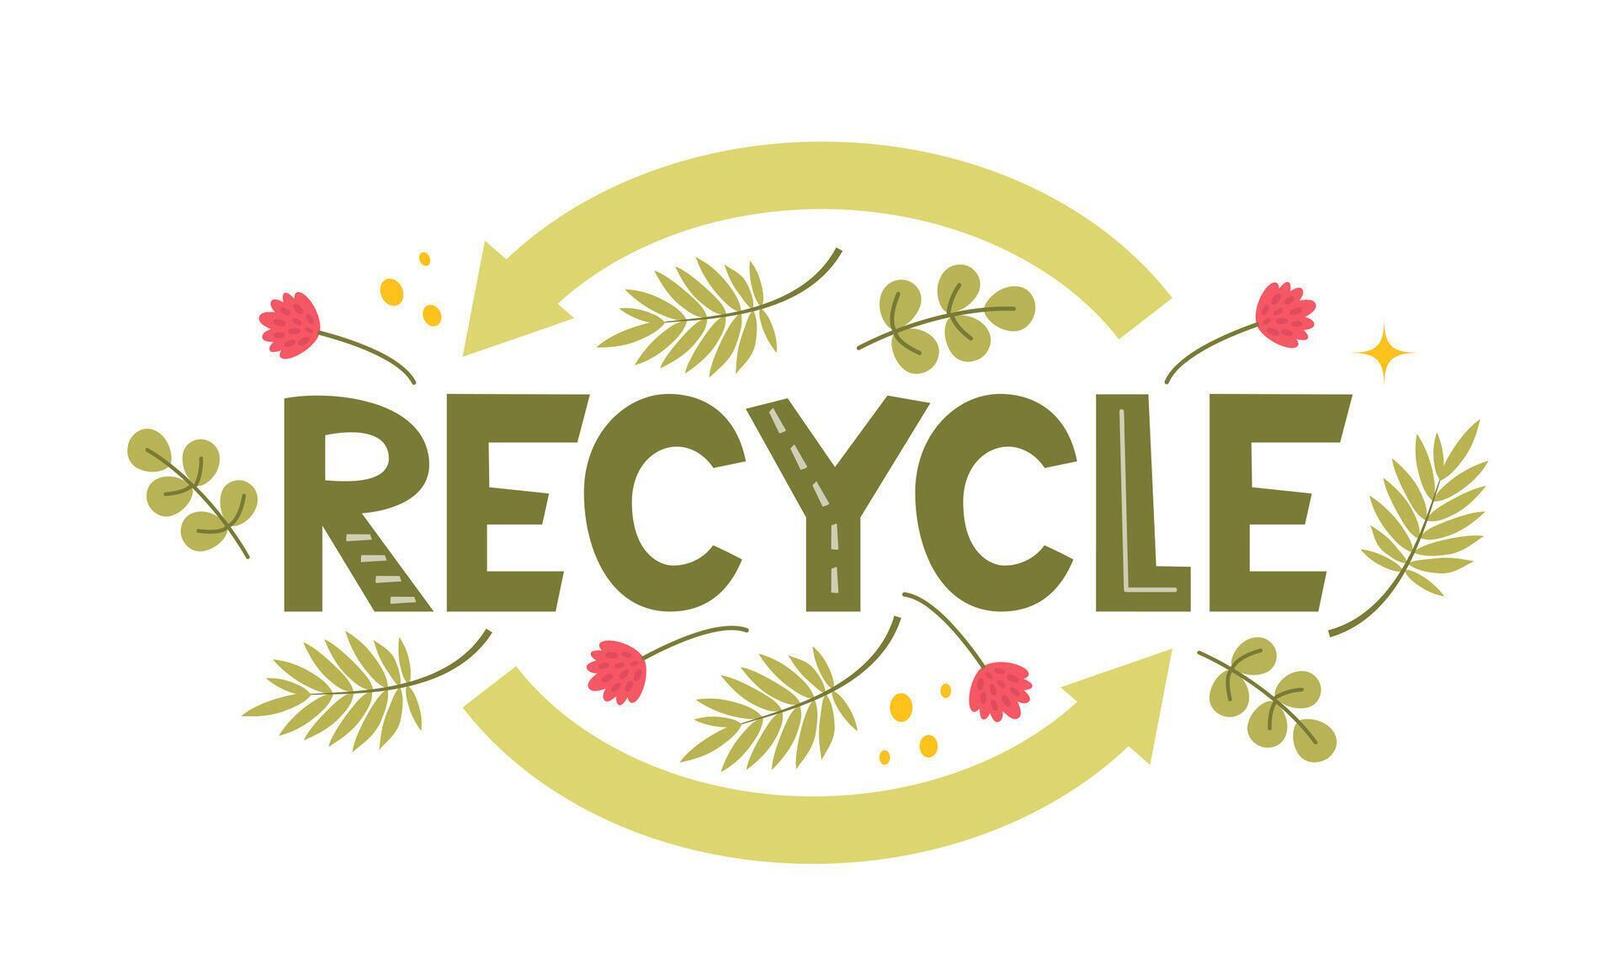 recycler caractères. moderne éco autocollant avec recycler signe, flèches et feuilles. concept de écologie, zéro déchets et durabilité. vecteur illustration.